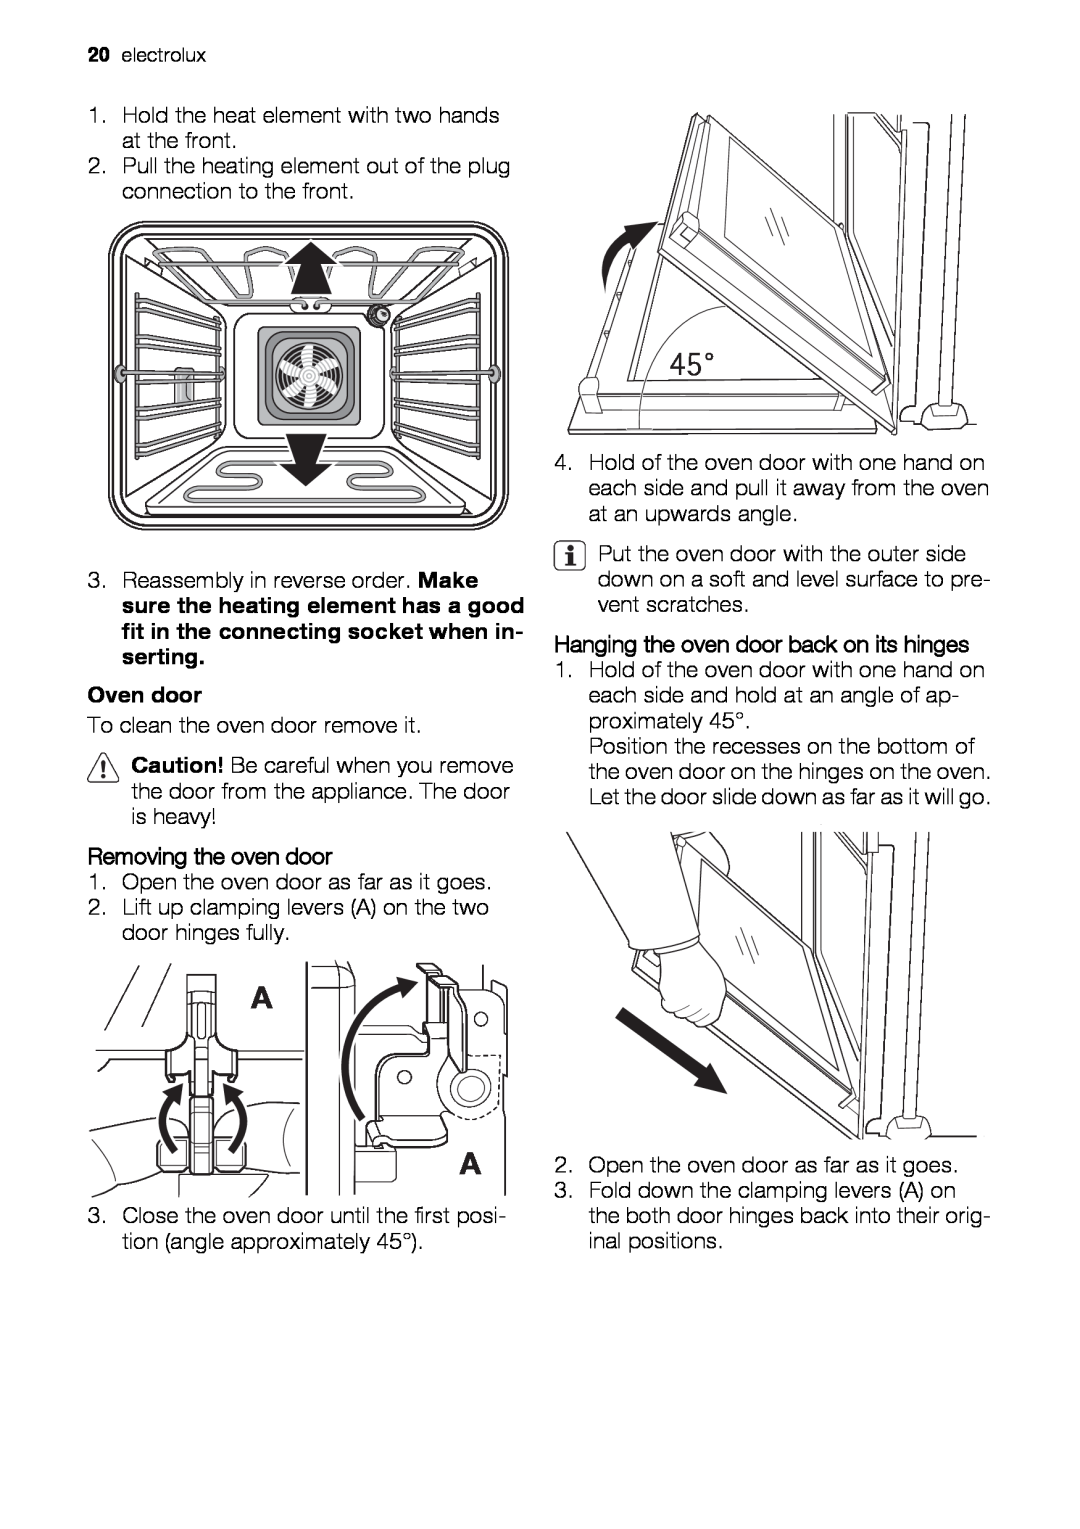 Electrolux EH GL5X-4 user manual Oven door, Removing the oven door, Hanging the oven door back on its hinges 